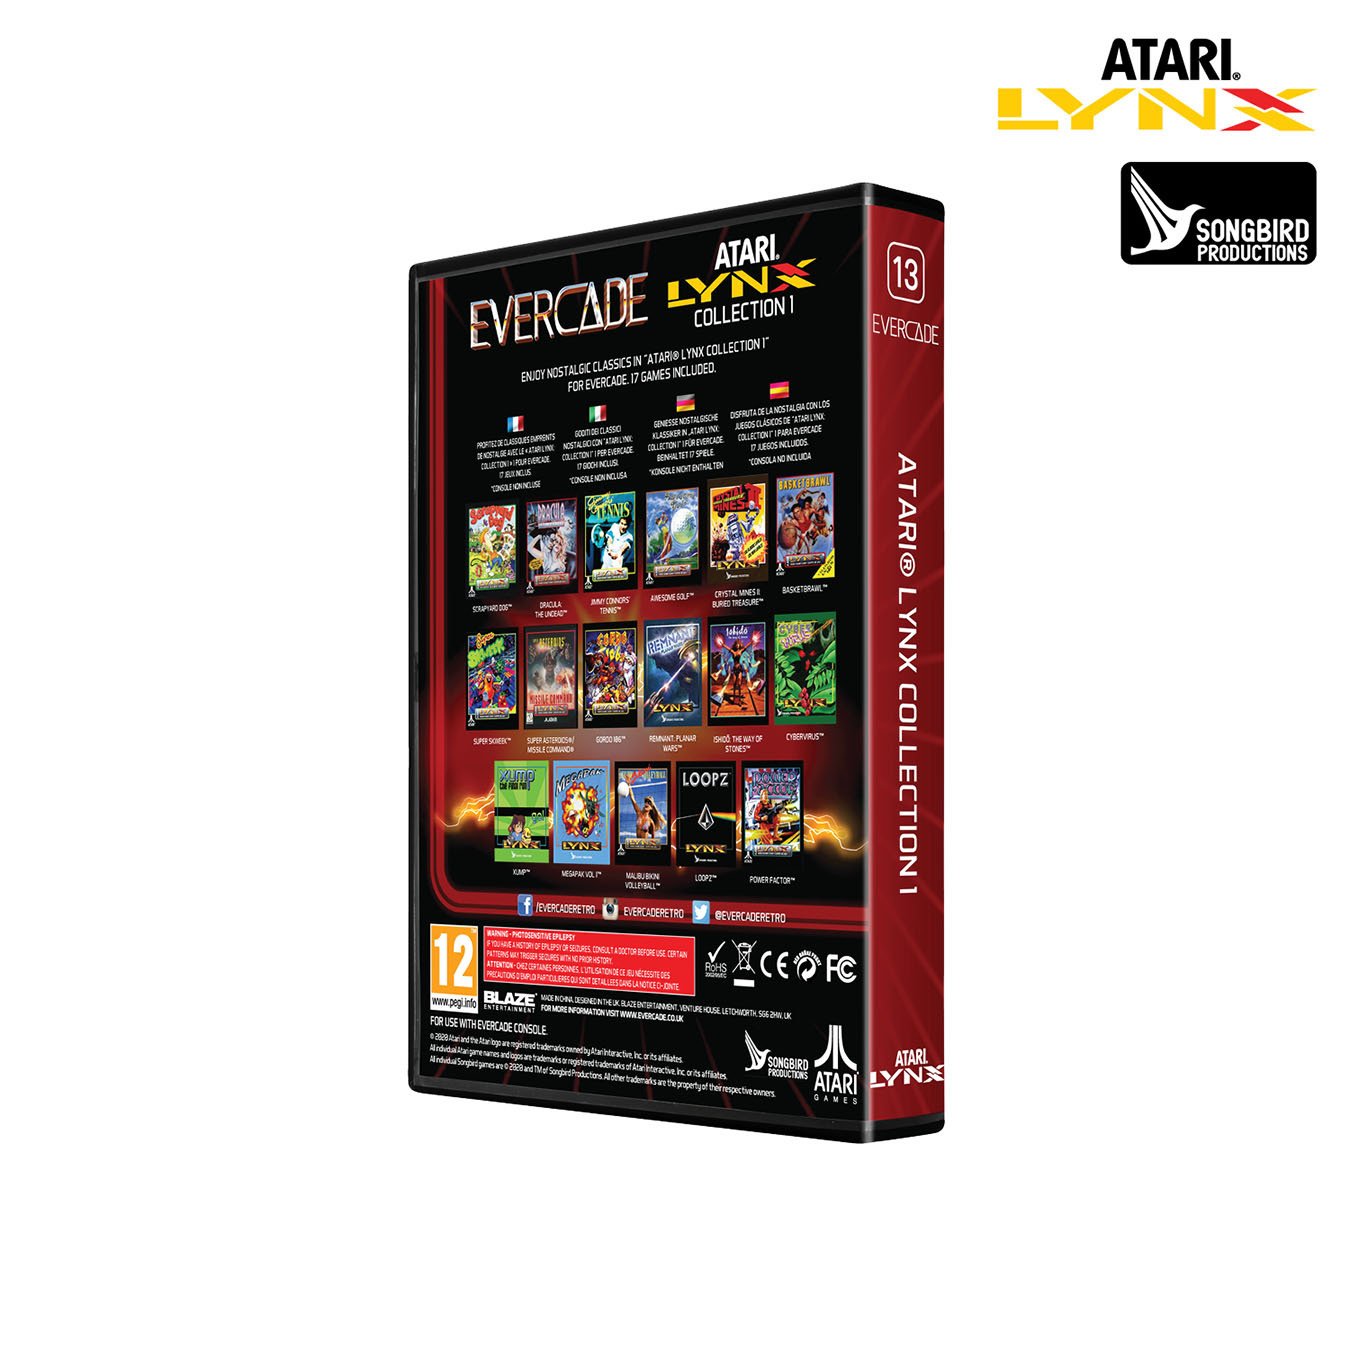 Blaze Evercade Cartridge Atari Lynx Collection 1 Pre-Order Review